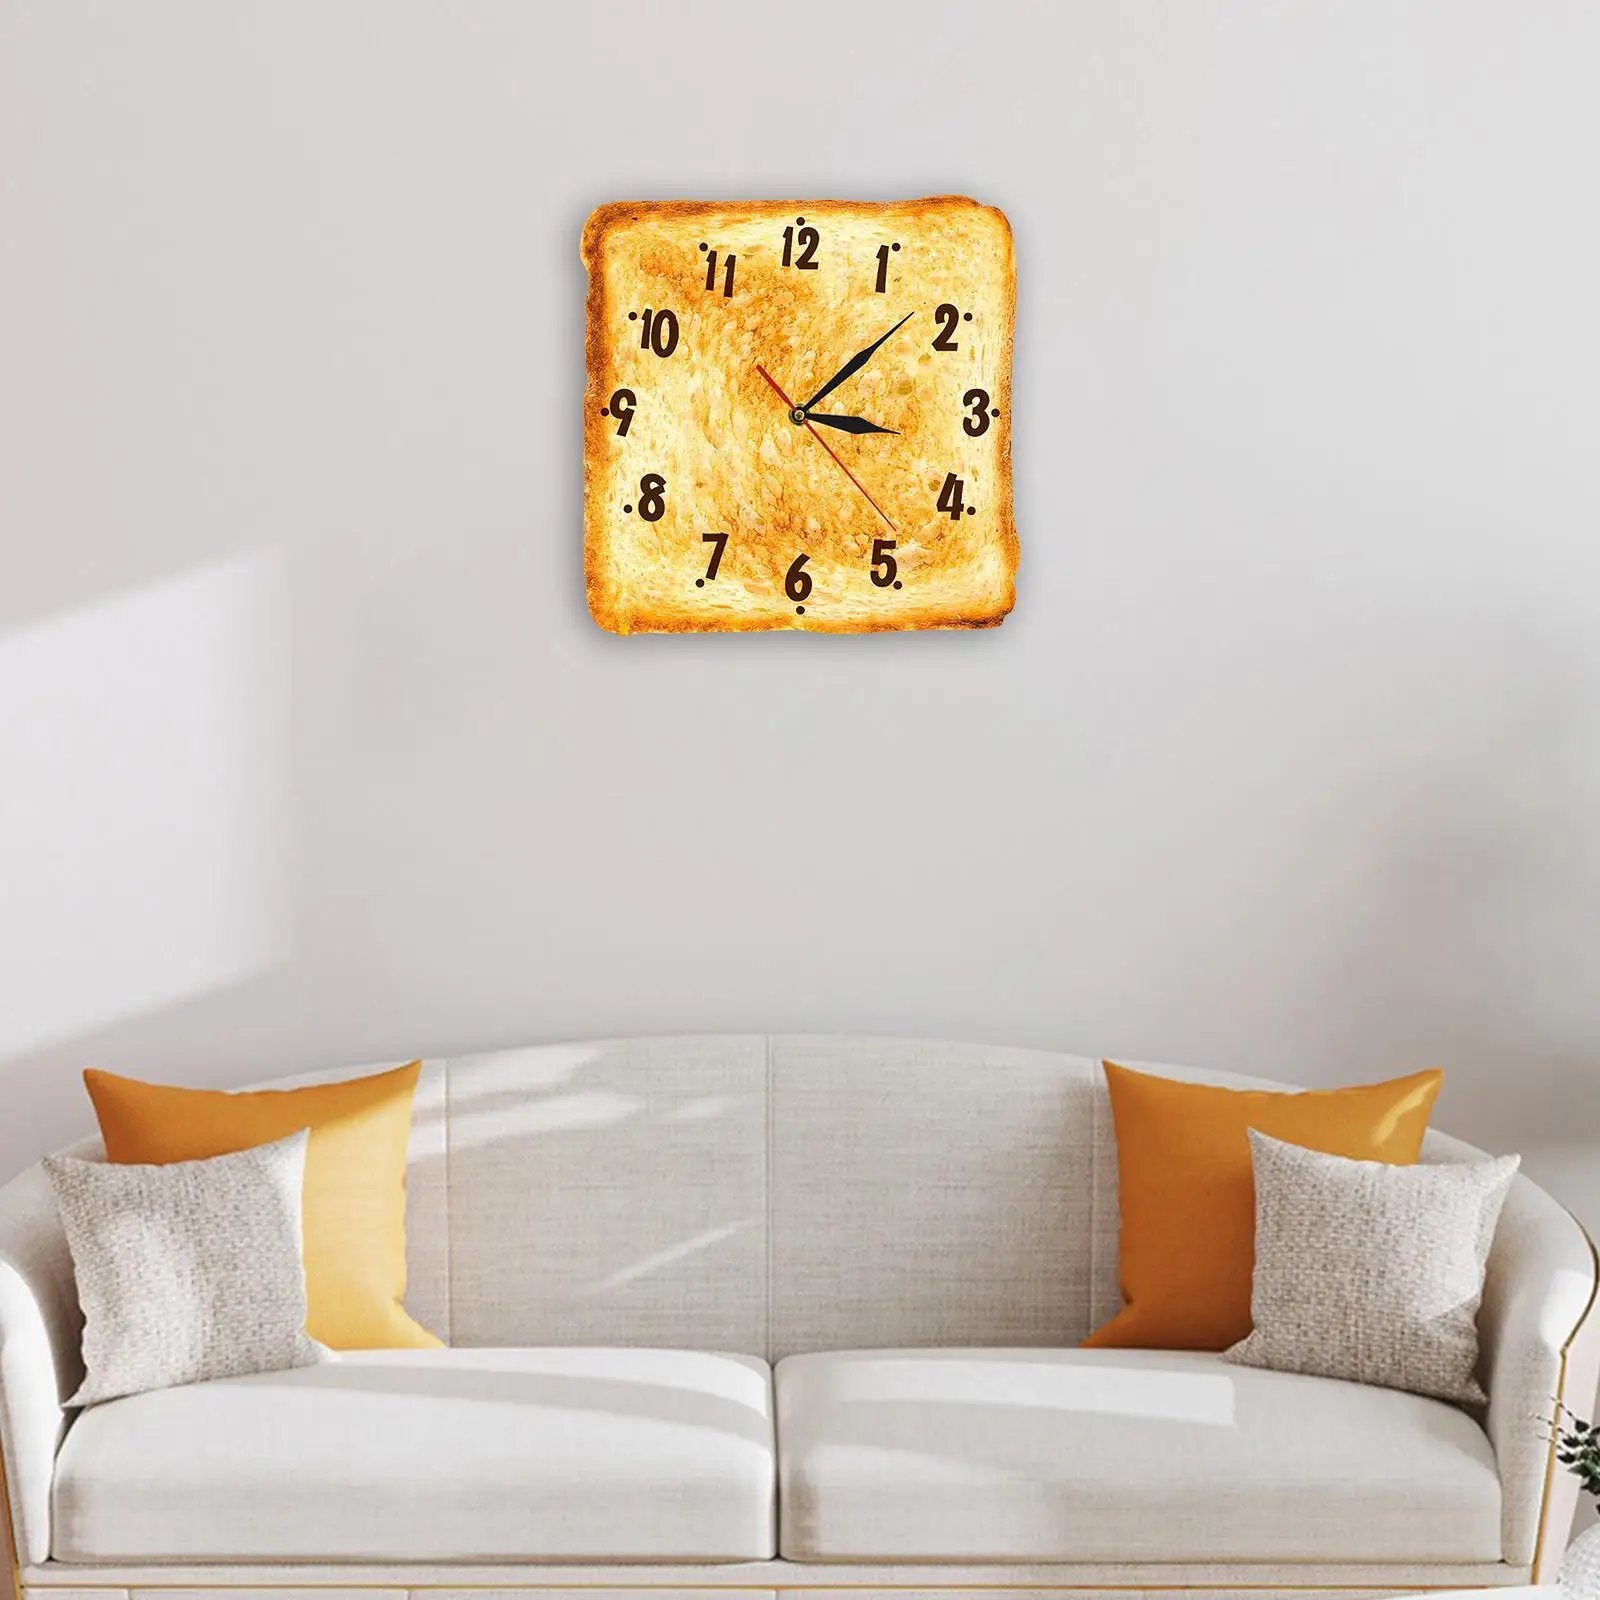 Toasted Bread Wall Clock 30cm Non Ticking Decorative Square Arabic Numerals